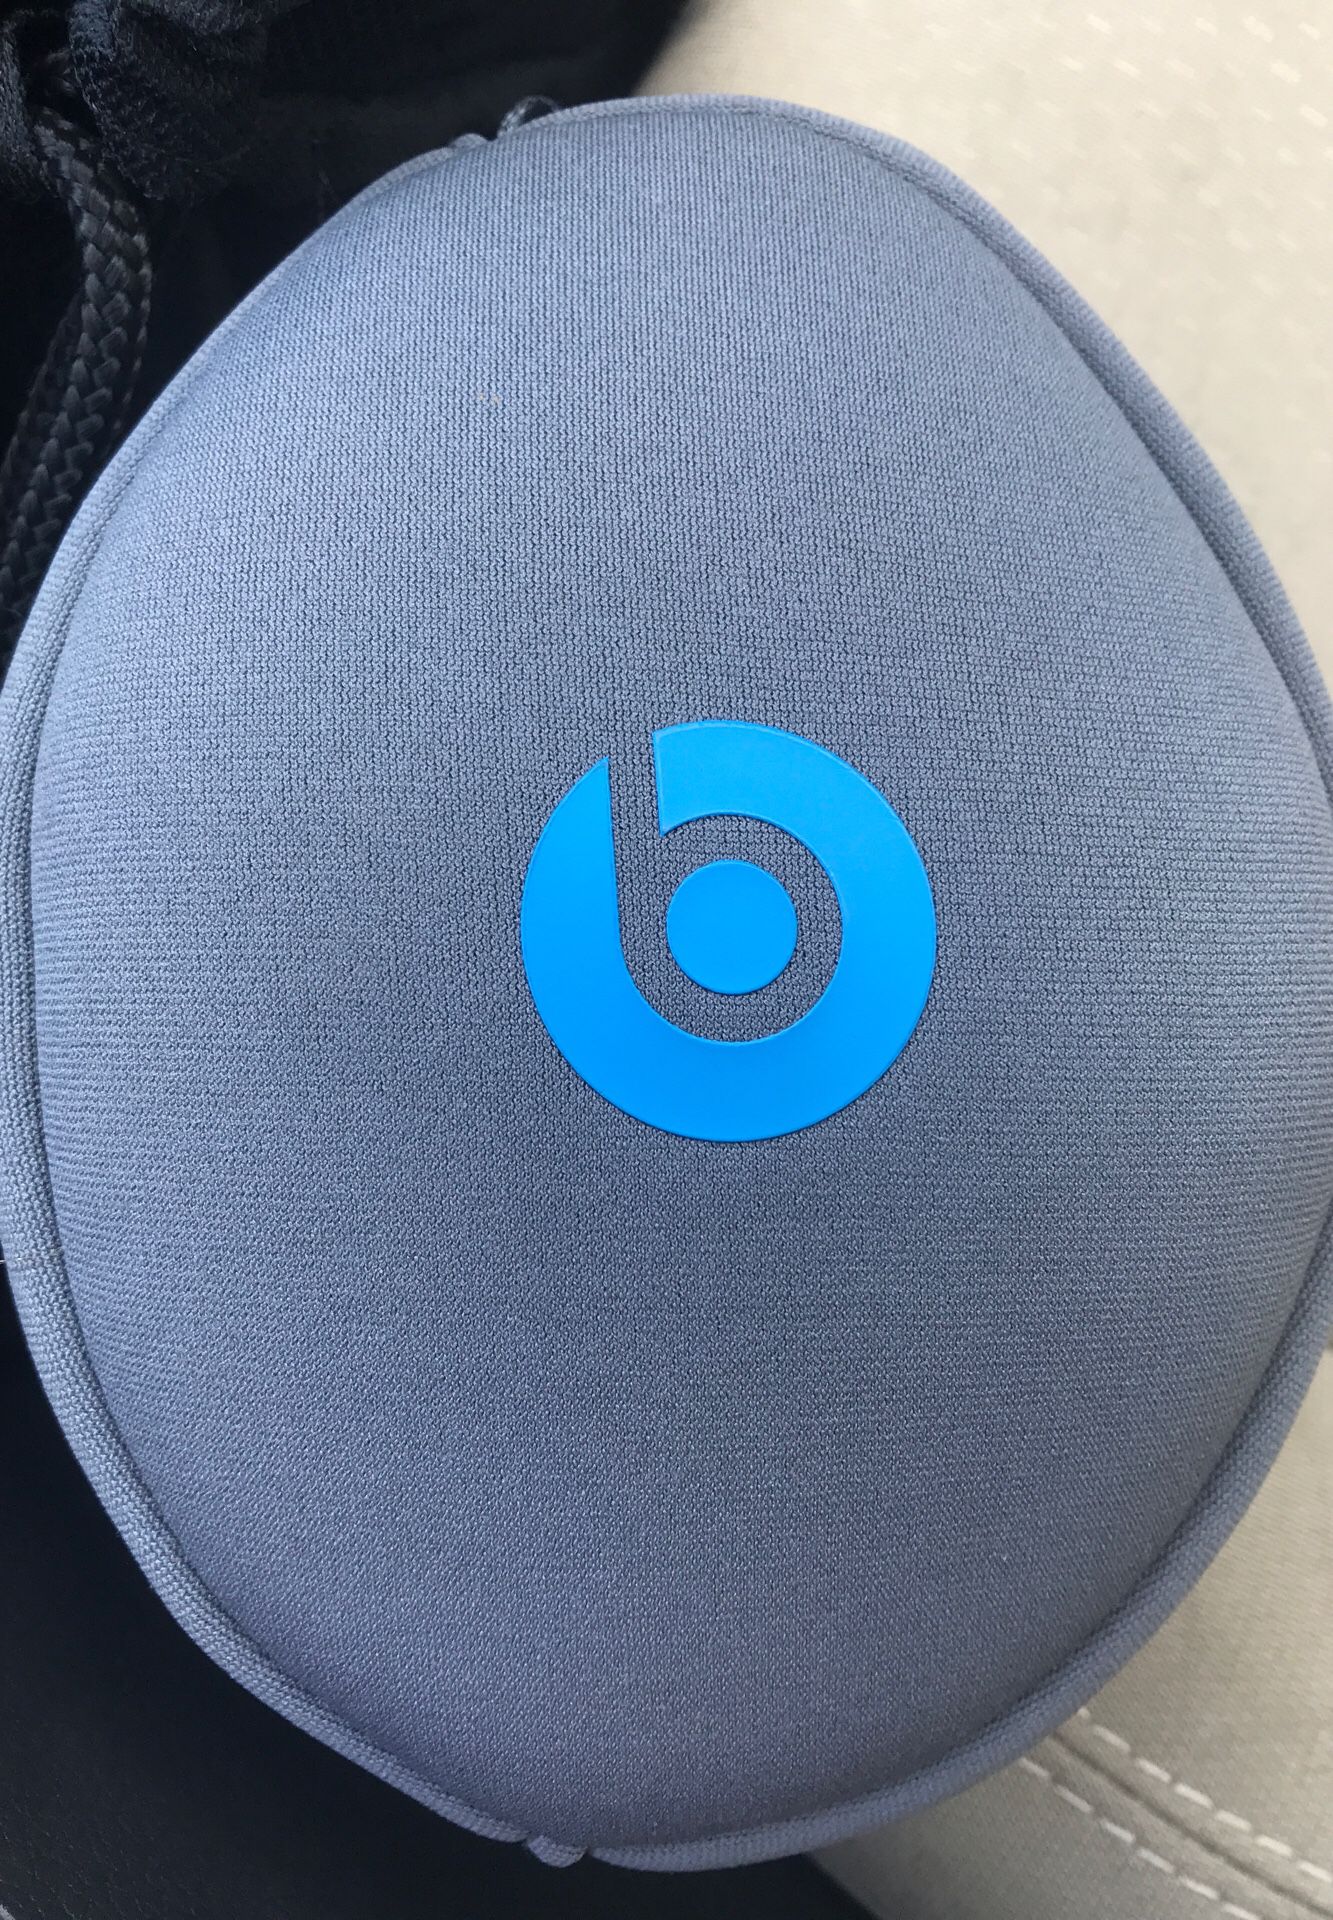 Beats Studio Wireless Headphones Grey/Blue